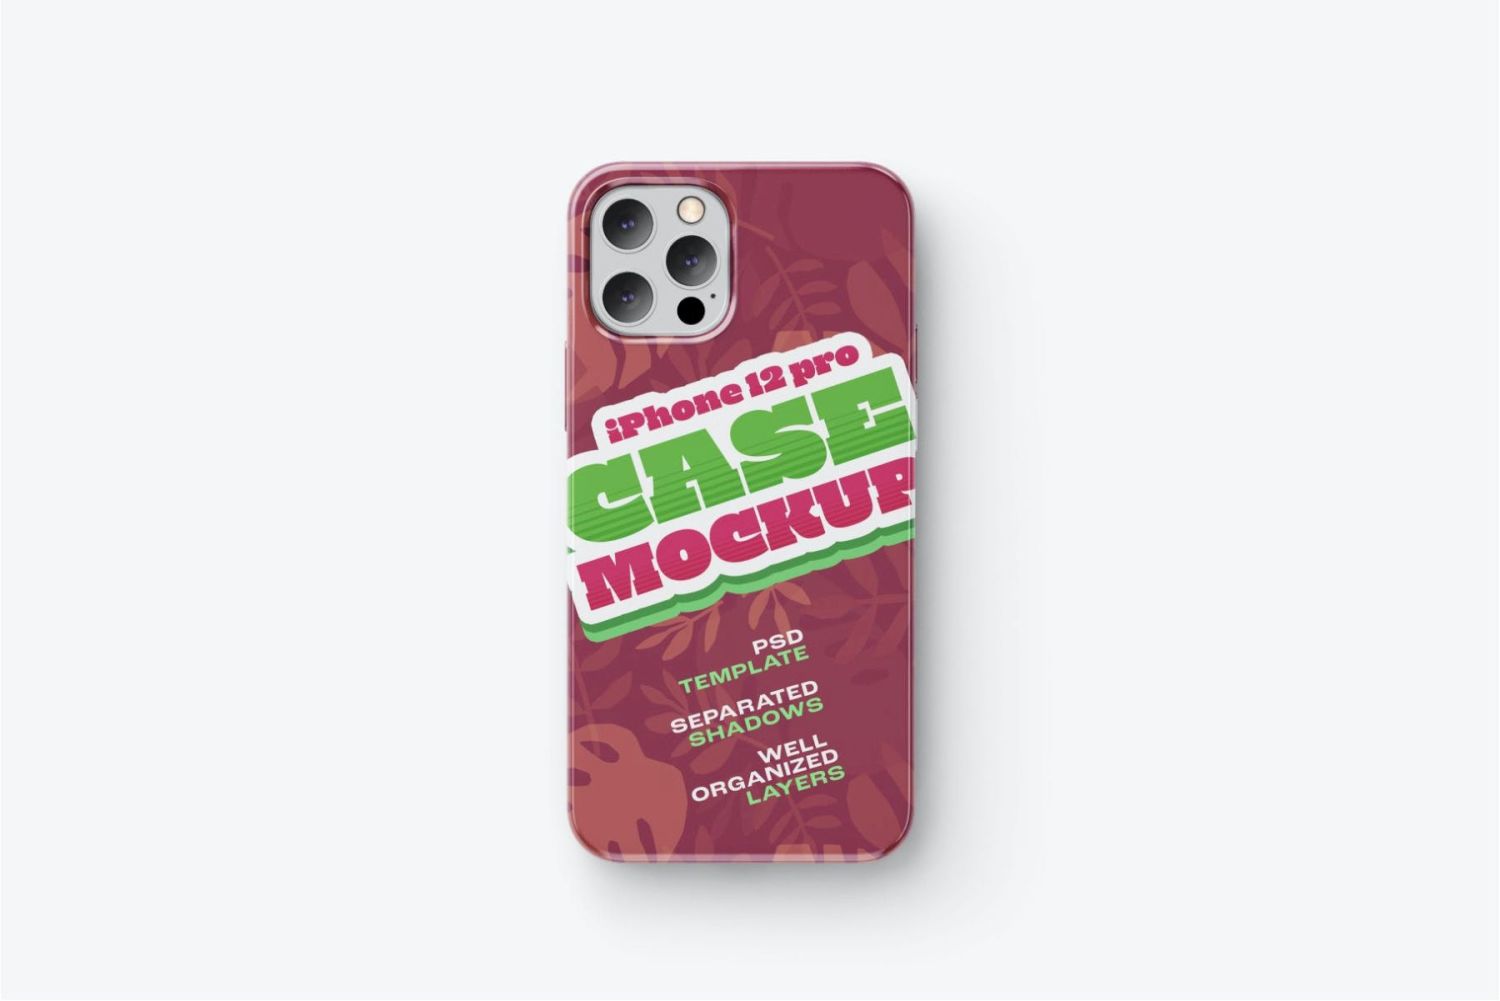 iPhone 12 Pro 手机壳样机套装 iPhone 12 Pro Case Mockup Set插图9